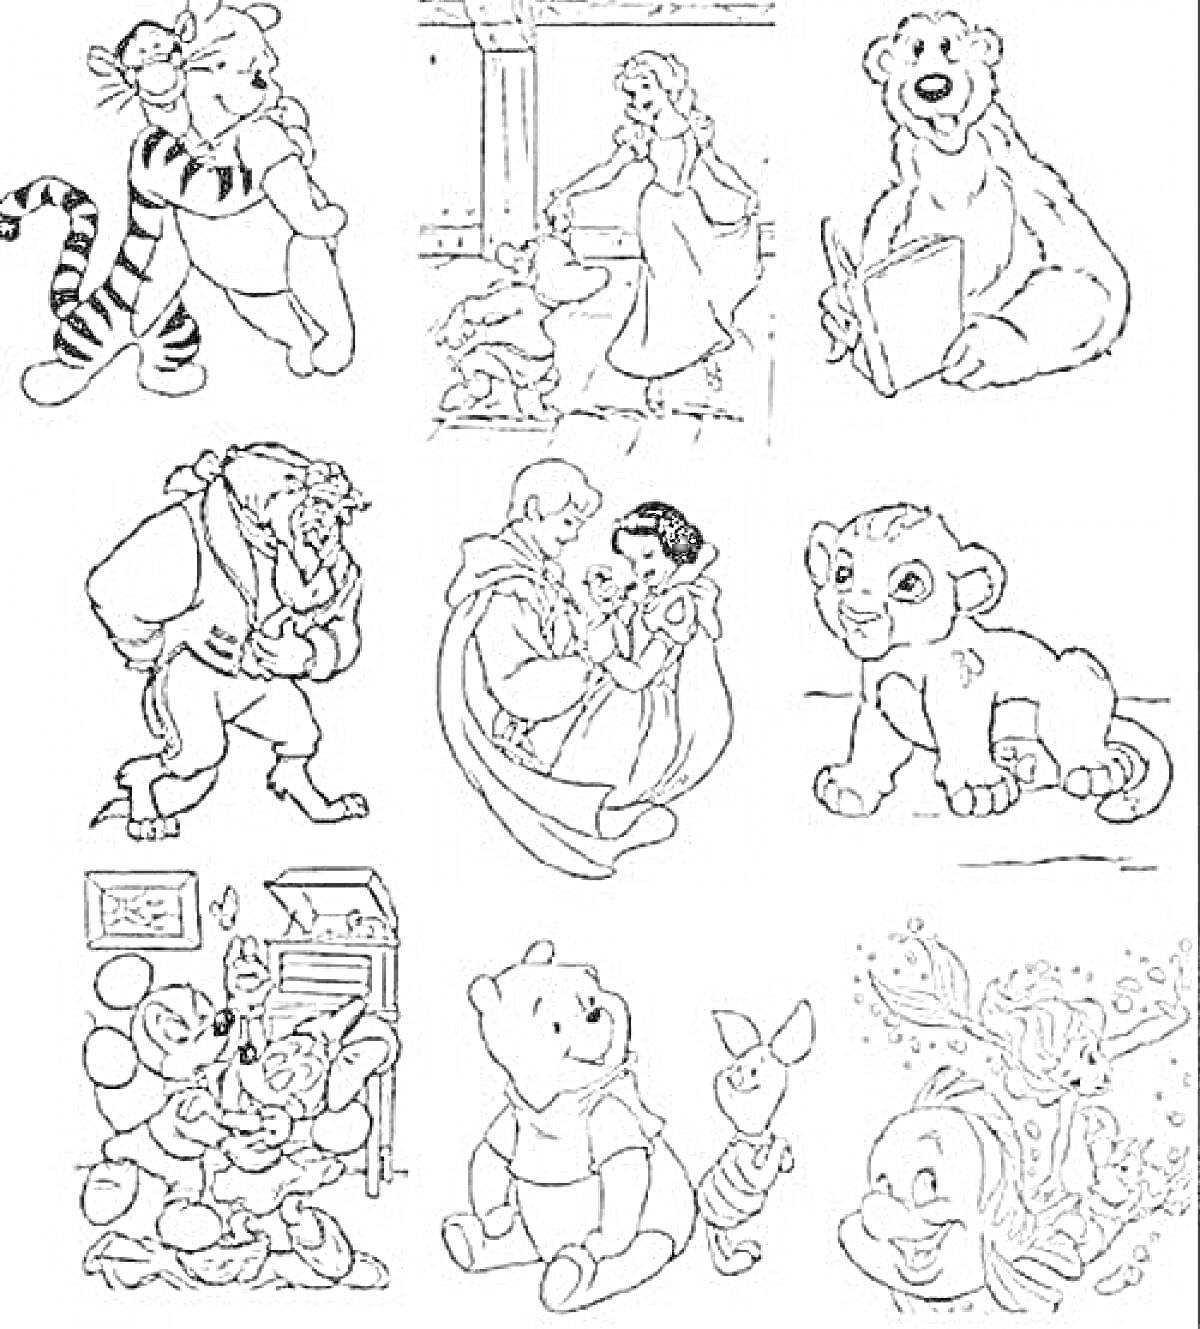 Раскраска Винни-Пух с тигром, женщина с девушкой, медведь с книгой, чудовище, принц с девушкой, львенок, комната с игрушками, Винни-Пух с пятачком, русалка с рыбой